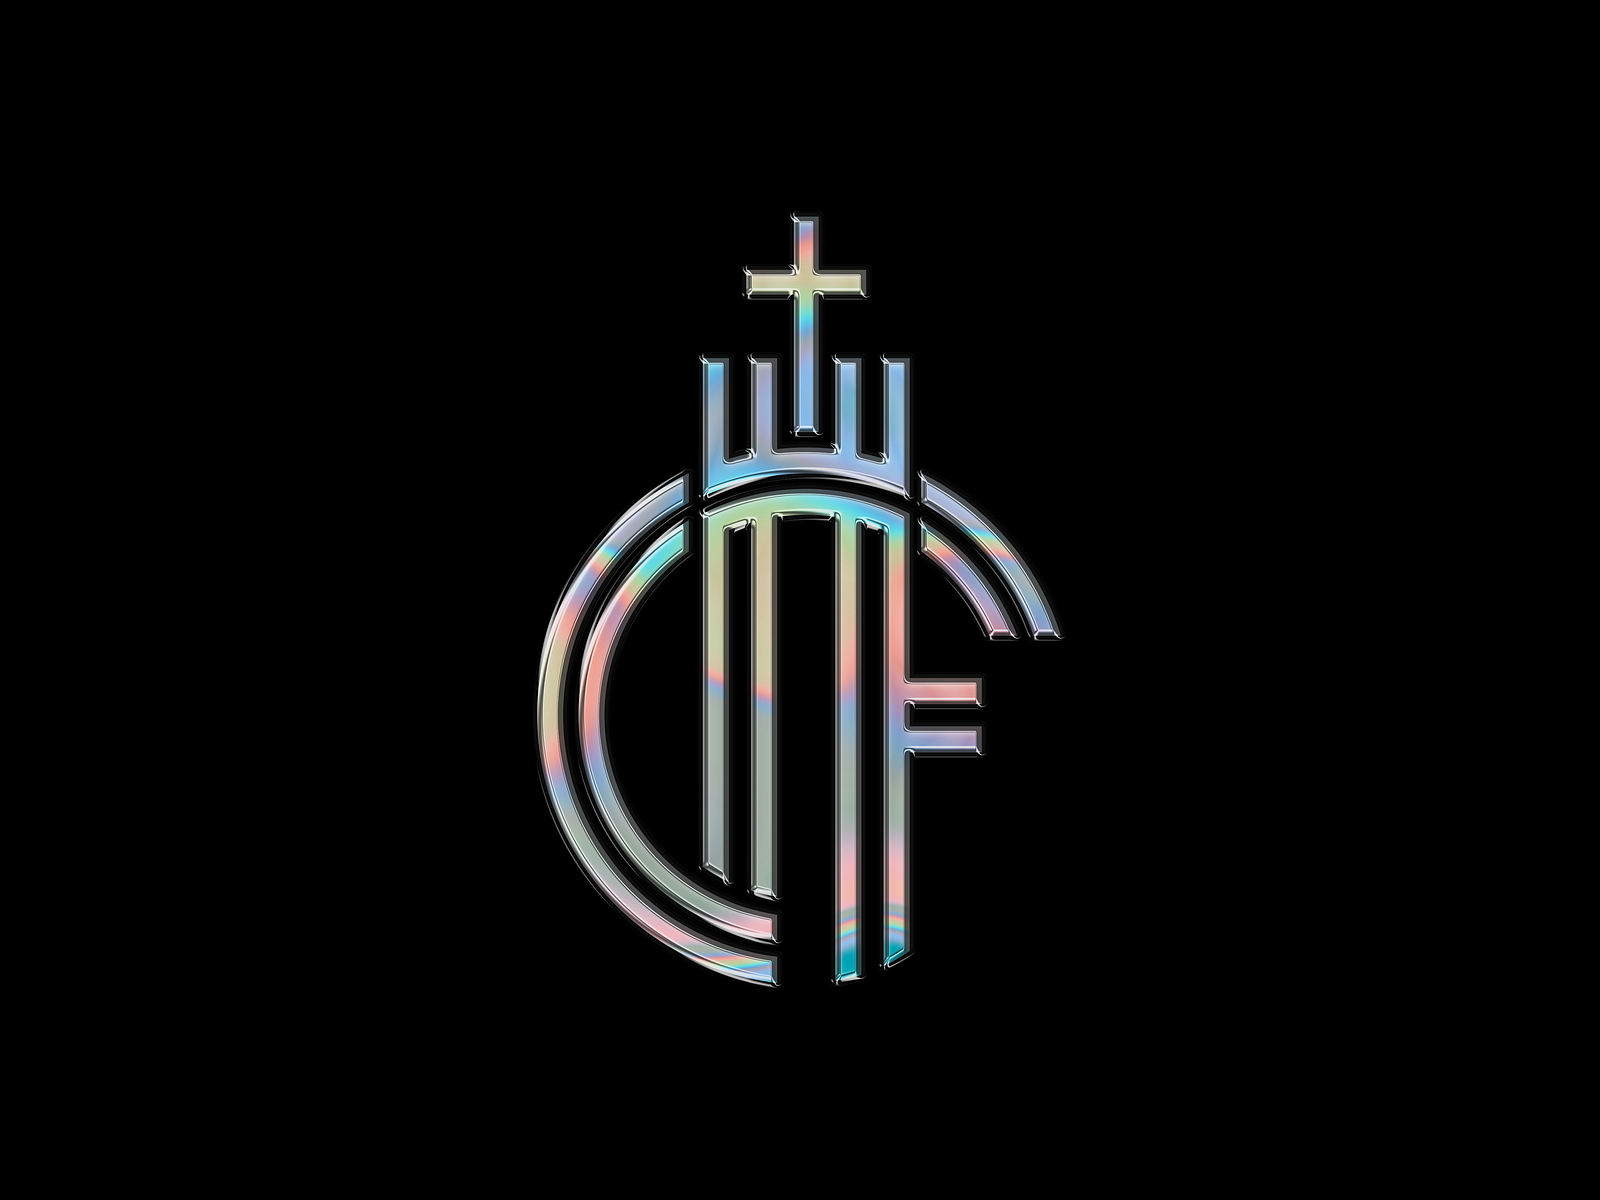 CHF Logo by Jardo de la Peña on Dribbble